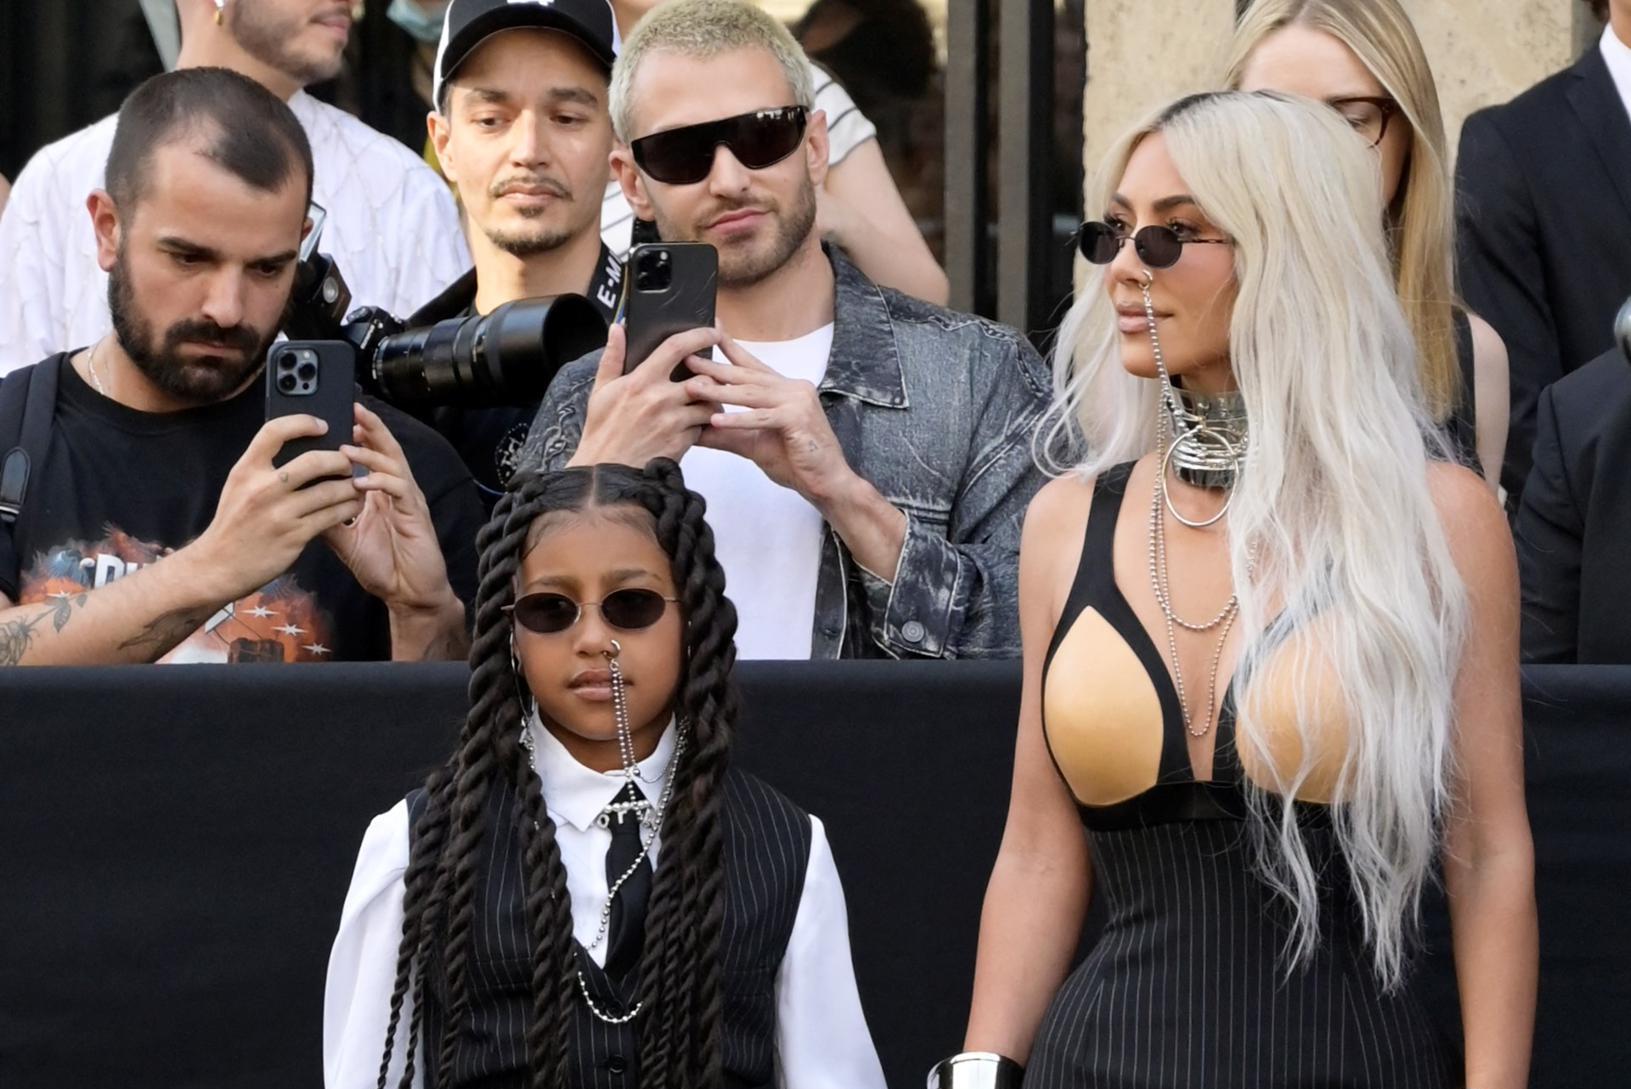 La figlia Northwest di Kim Kardashian chiede ai paparazzi: “Perché ci segui?”